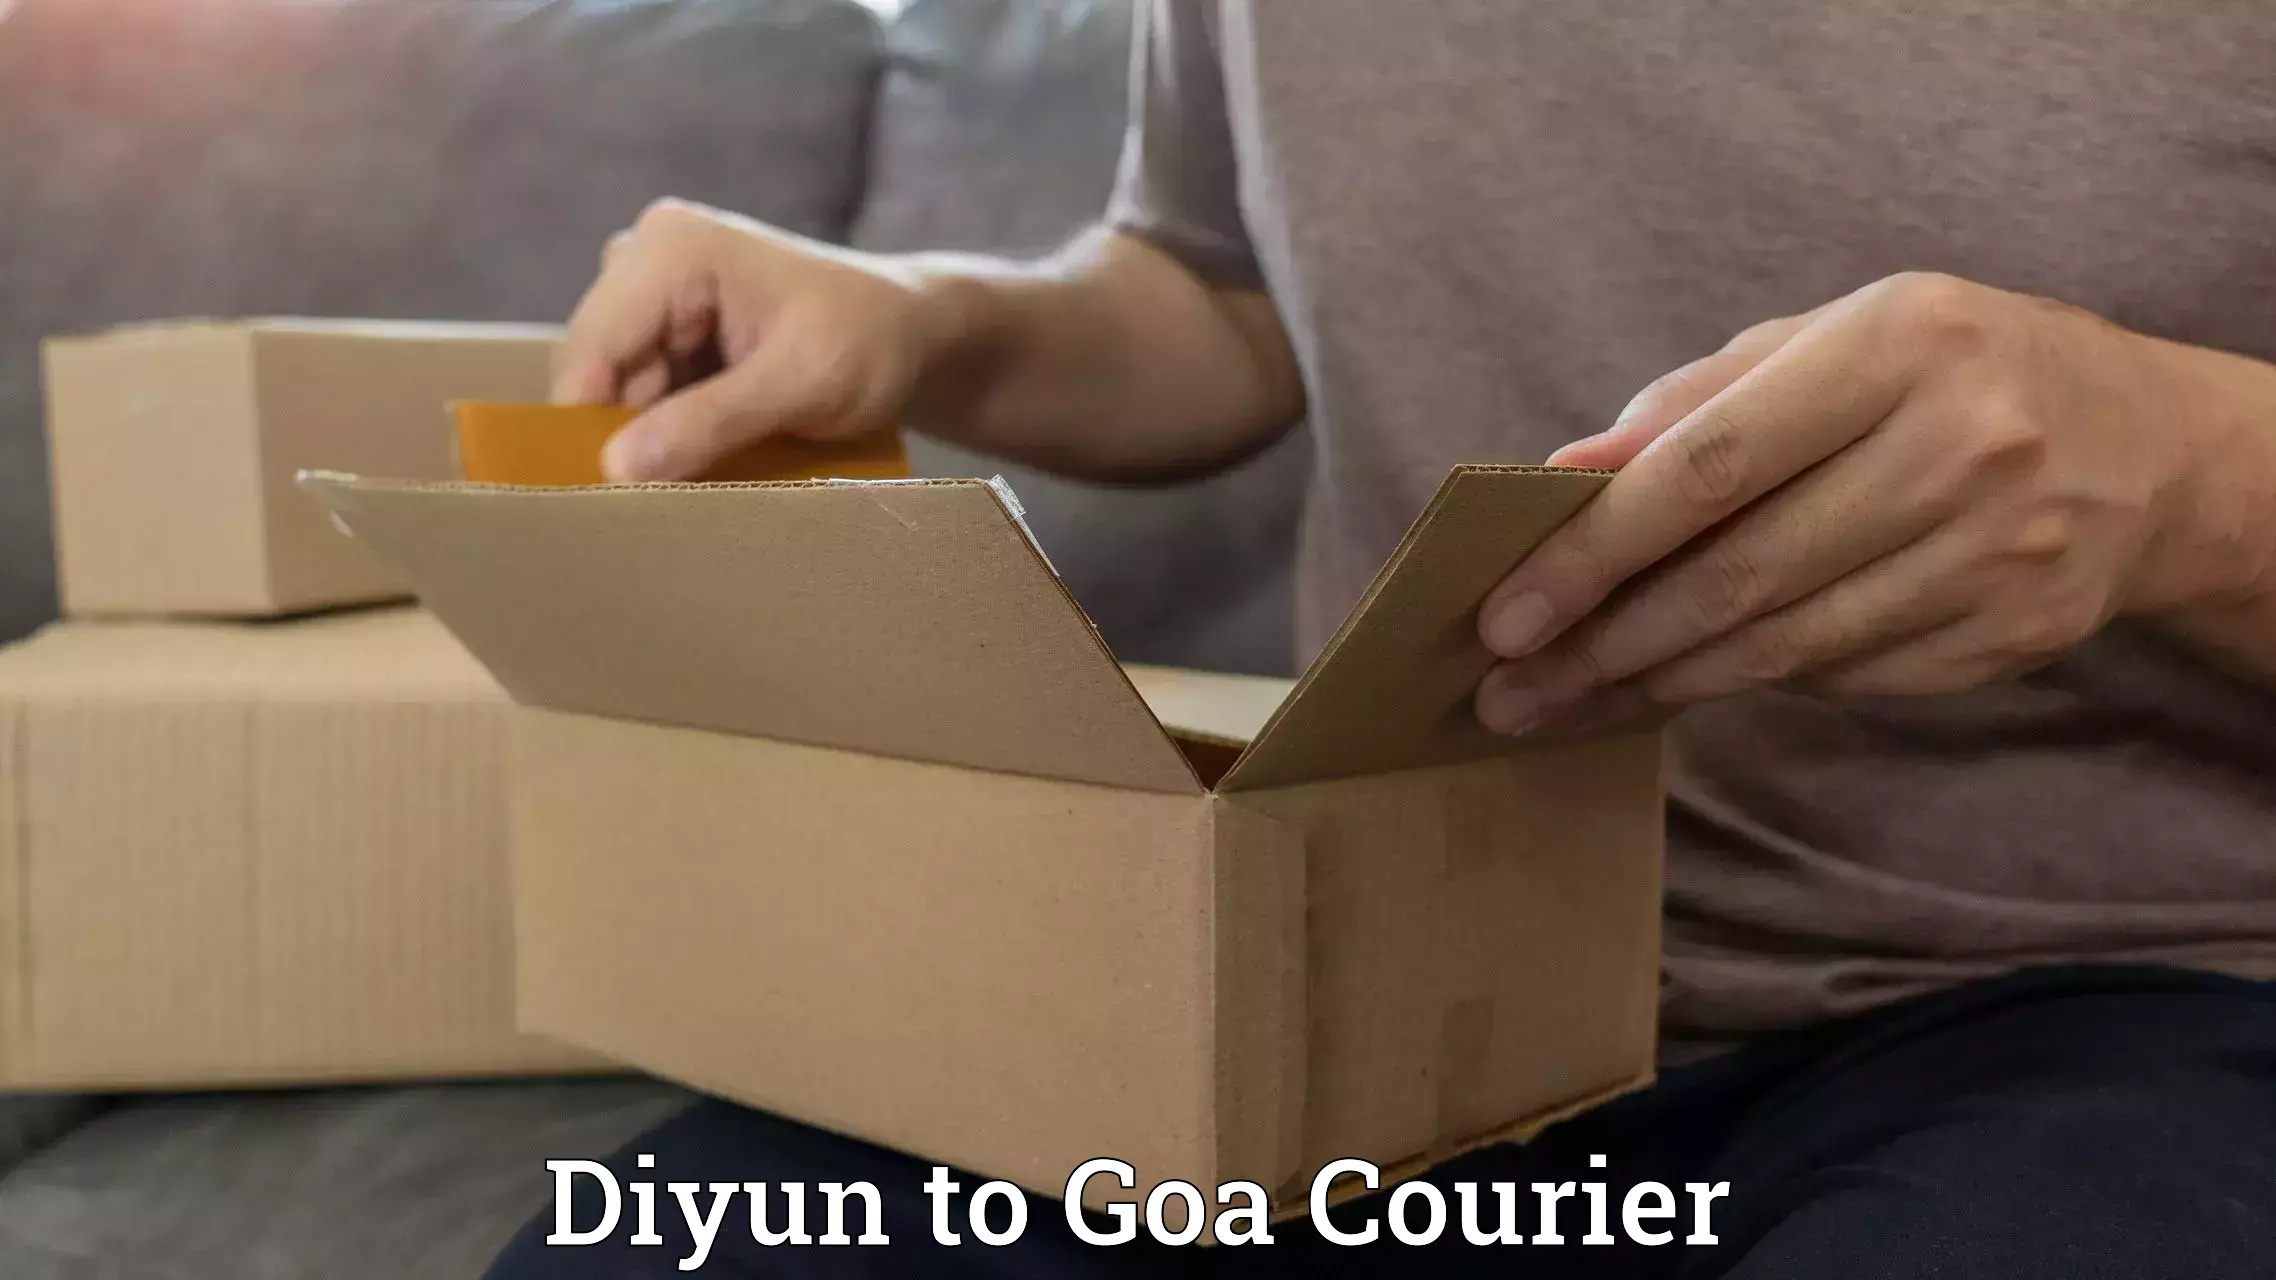 Next-day freight services Diyun to Goa